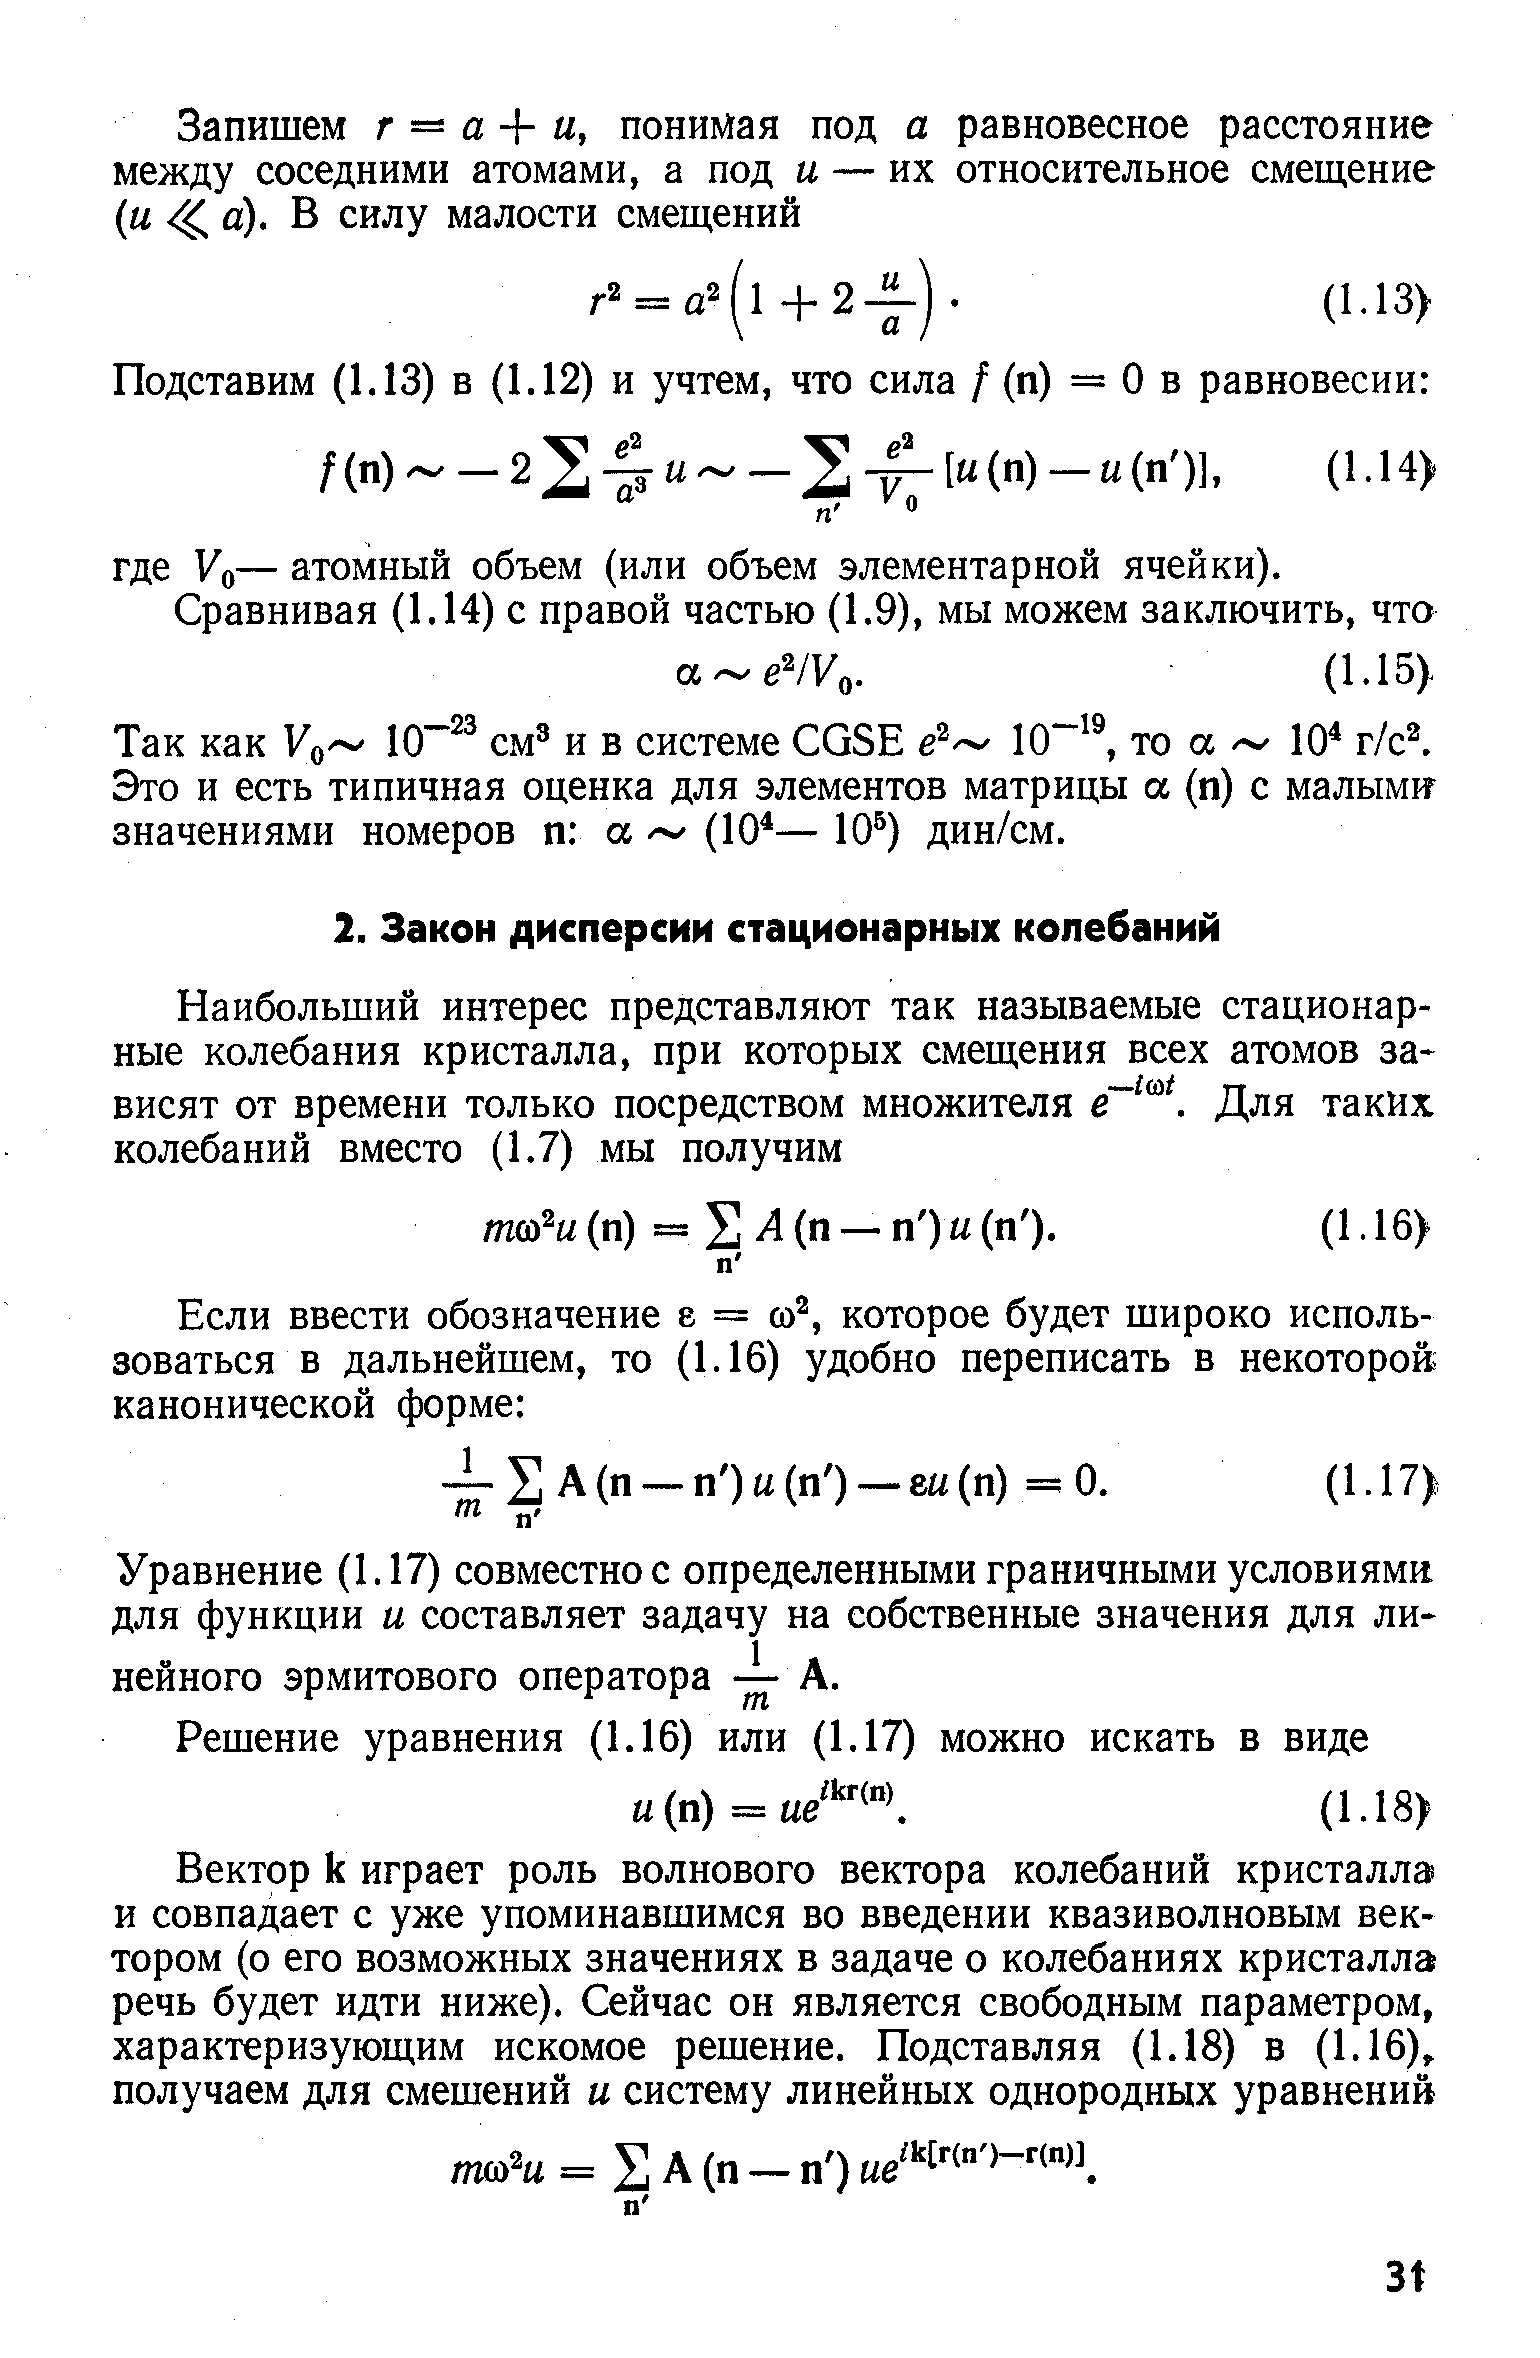 Уравнение (1.17) совместное определенными граничными условиями для функции и составляет задачу на собственные значения для линейного эрмитового оператора — А.